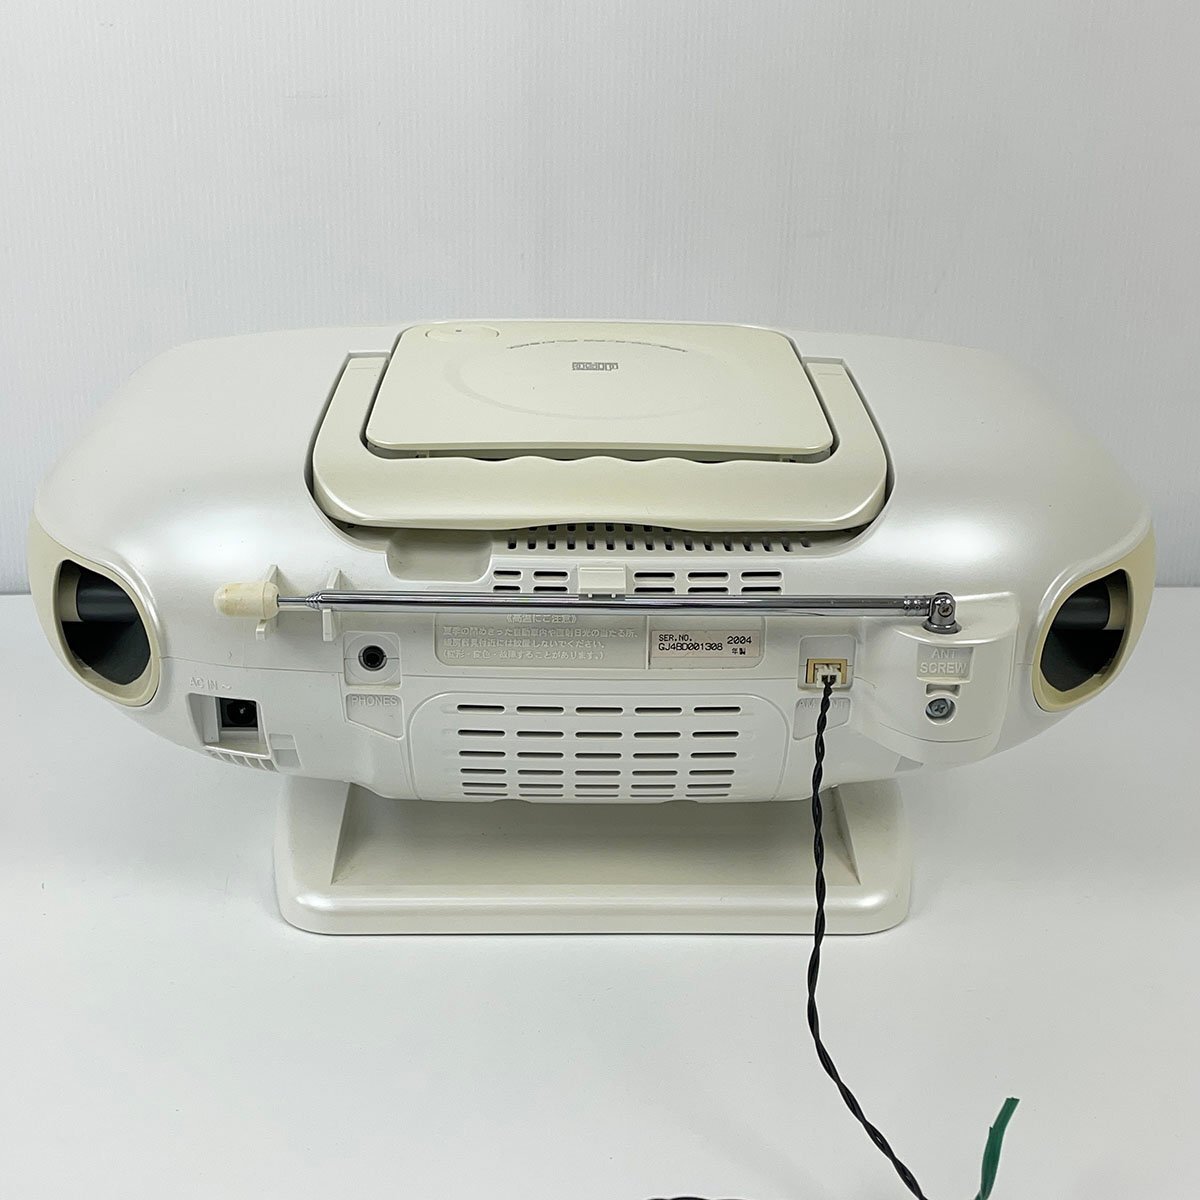 Panasonic パナソニック パーソナルMDシステム RX-MDX61 2004年製 リモコン付き CD/MDプレーヤー [R13164]の画像6